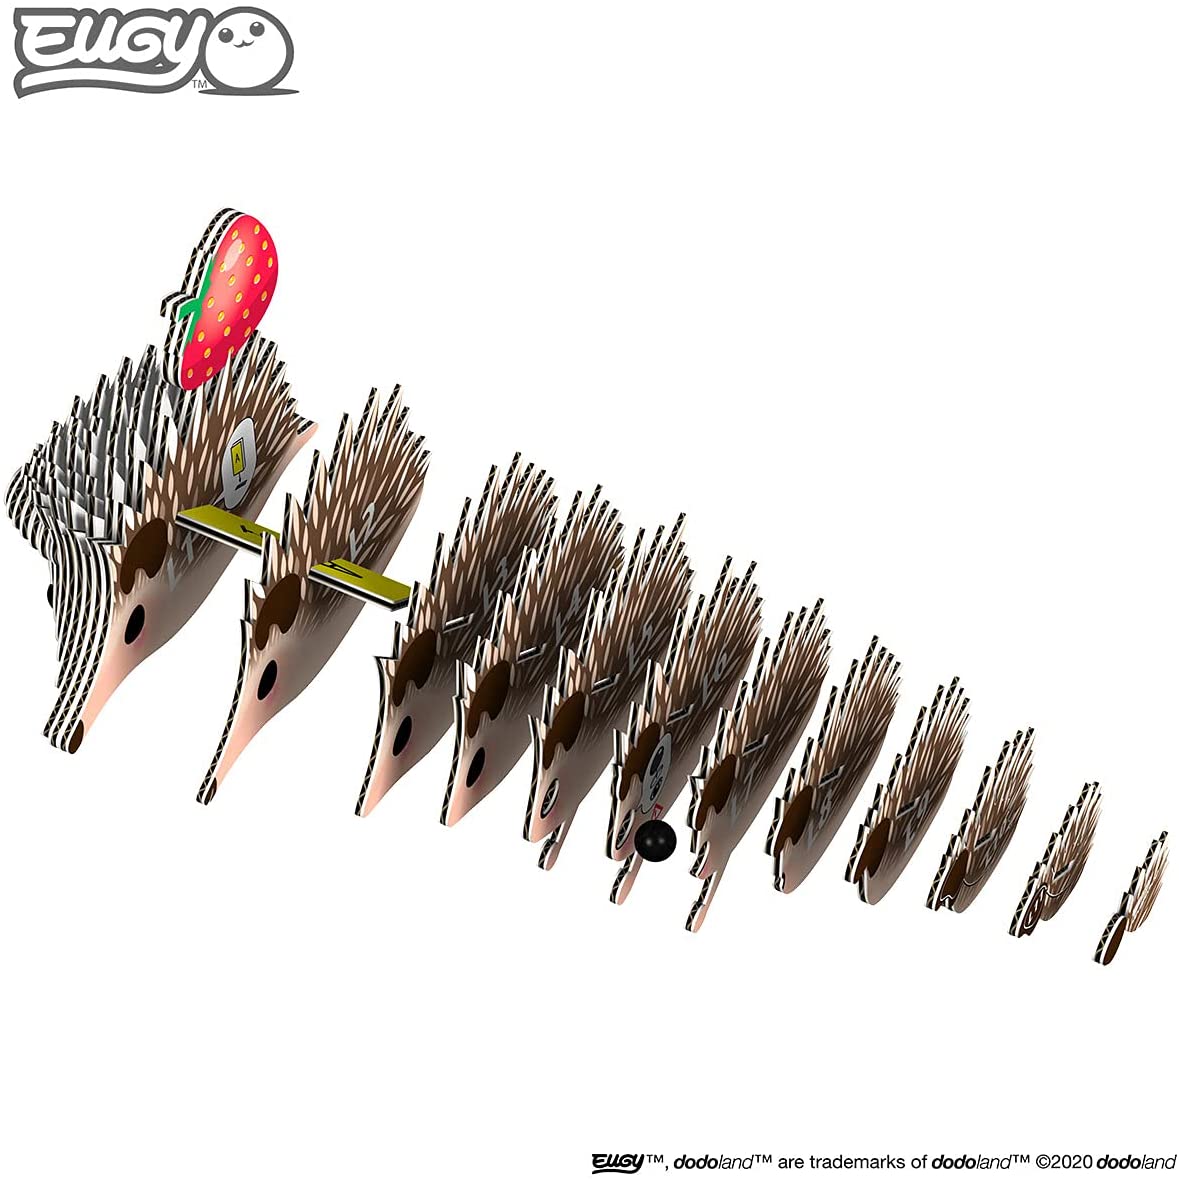 EUGY Hedgehog 3D Puzle